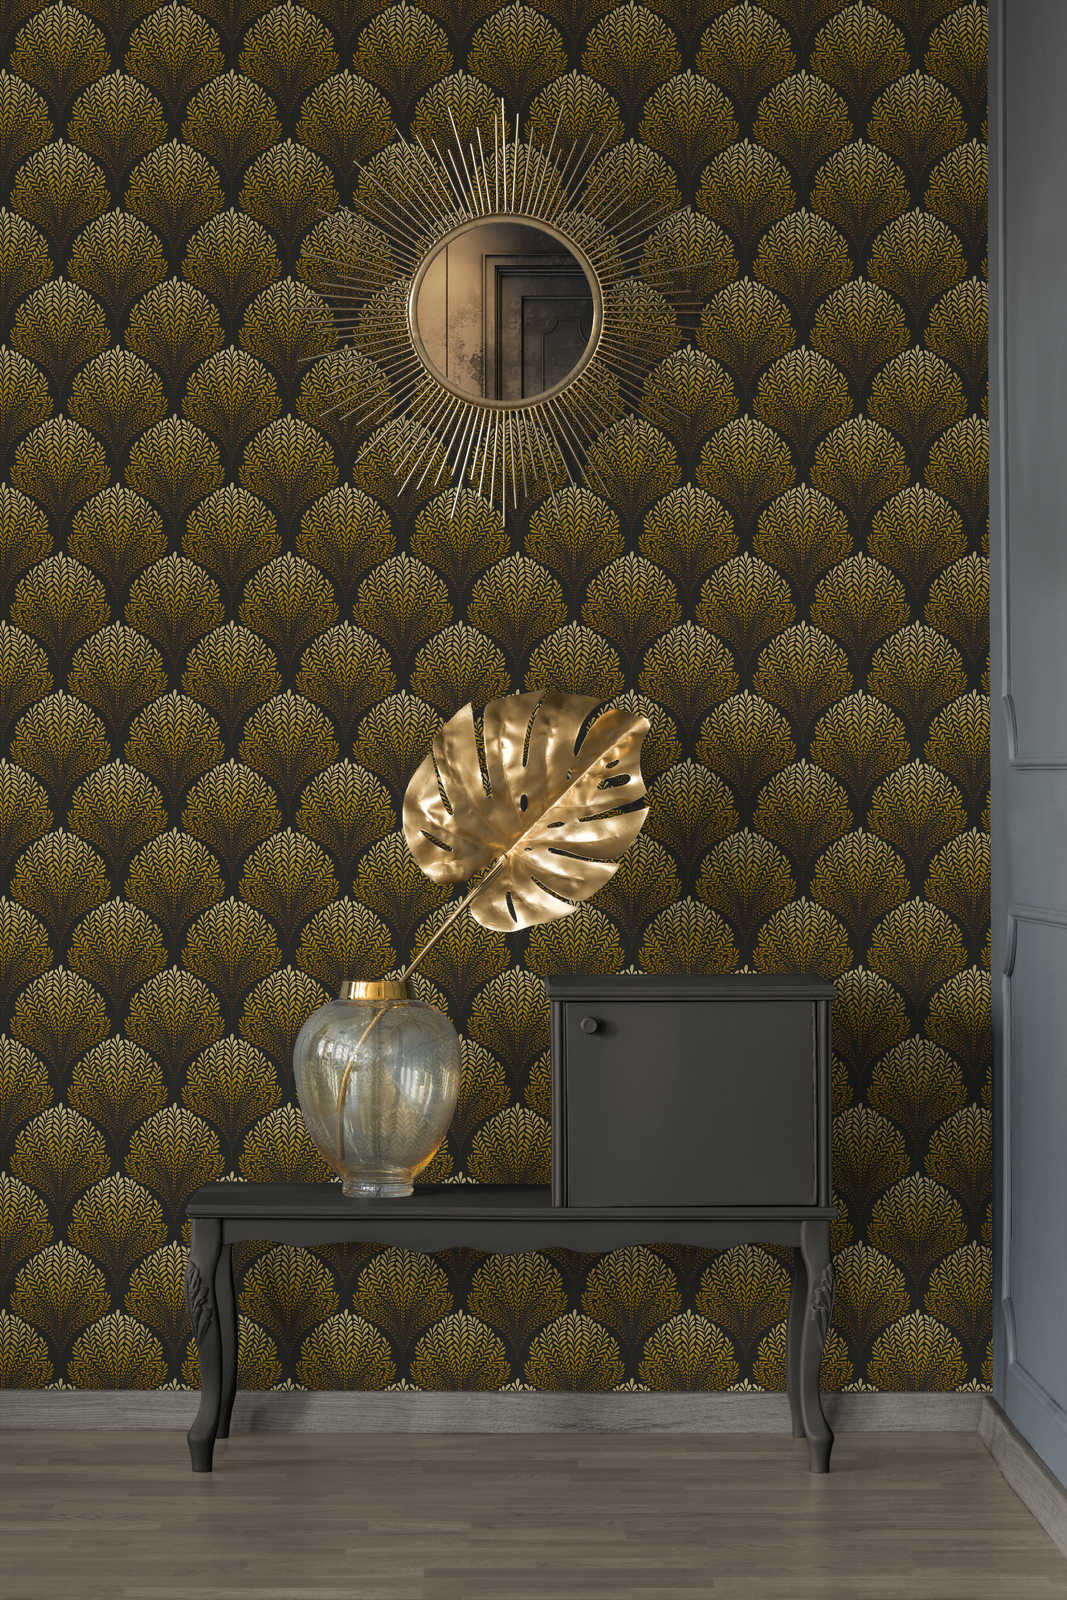             Retro Tapete mit Gold Ornamenten – Braun, Gelb, Schwarz
        